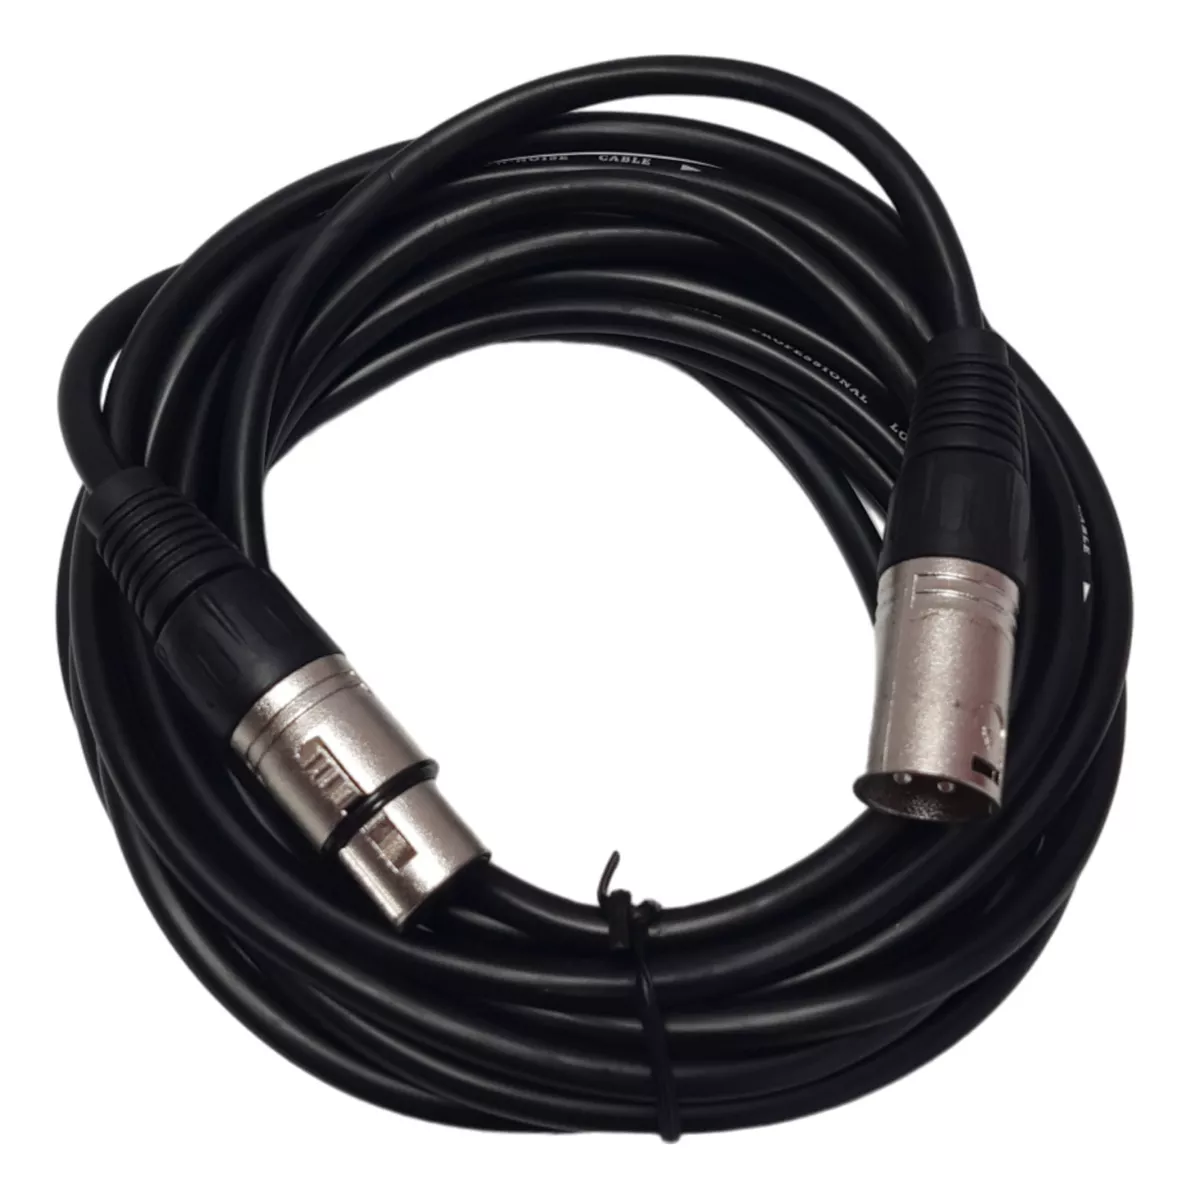 Primera imagen para búsqueda de rollo de cable para microfono balanceado